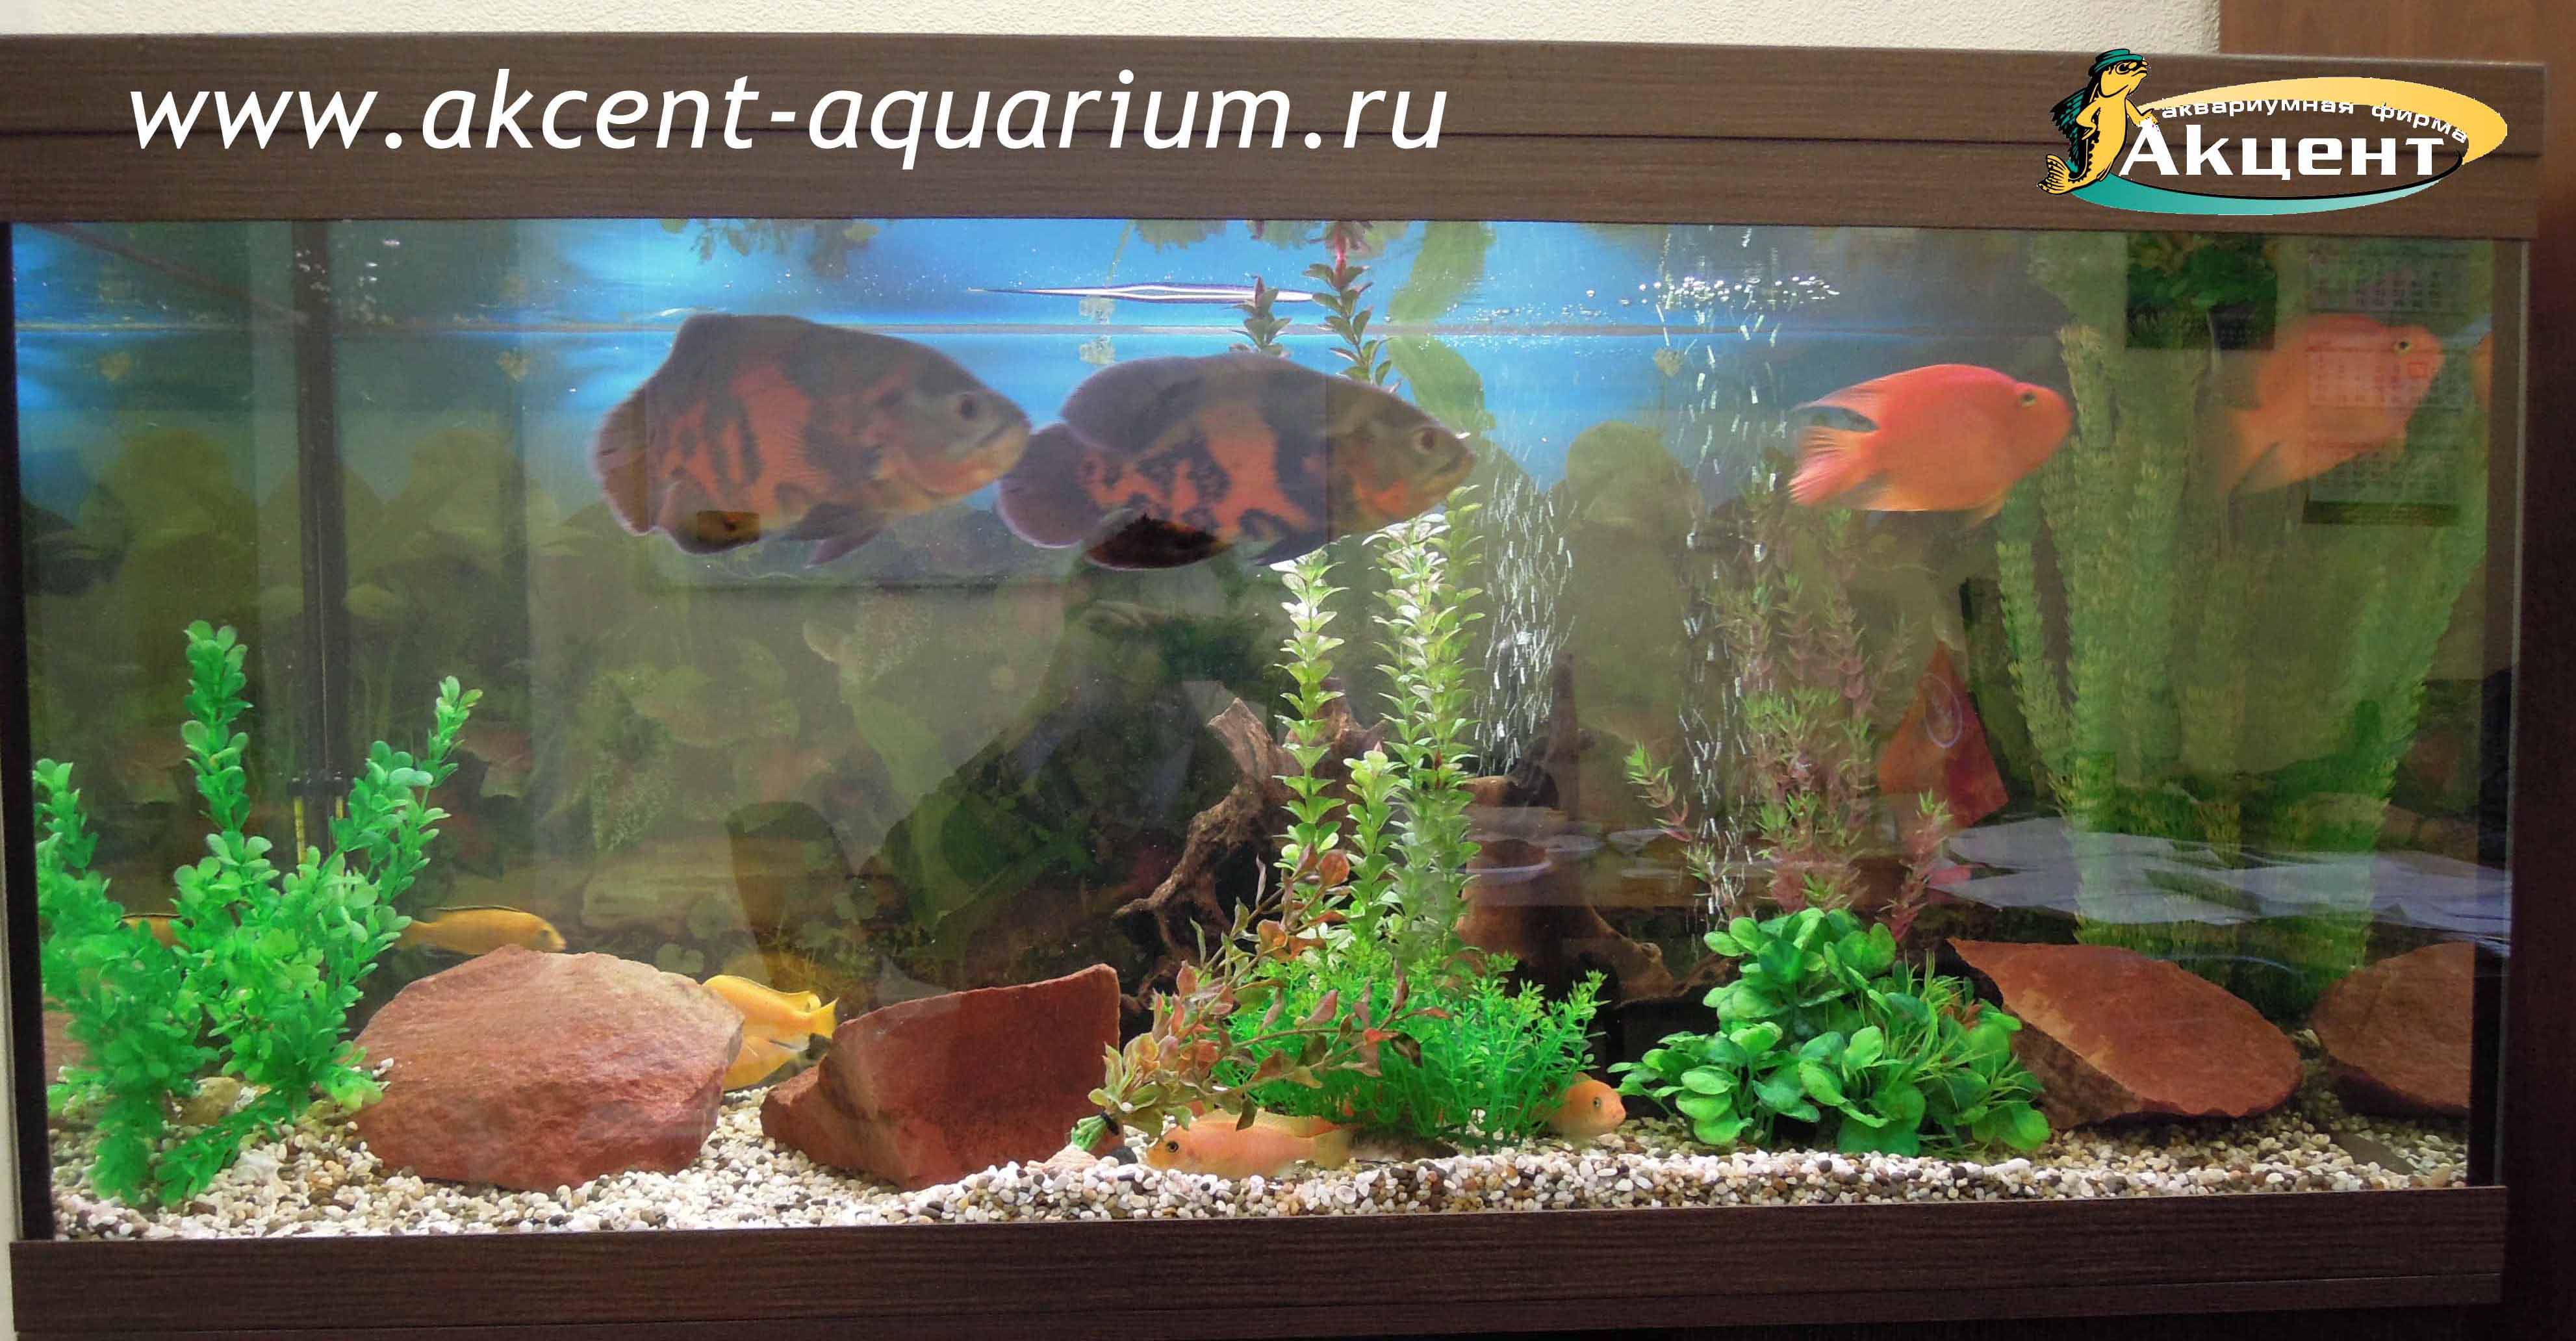 Акцент-аквариум, аквариум 250 литров, малиновый окол, астронотусы, попугаи.